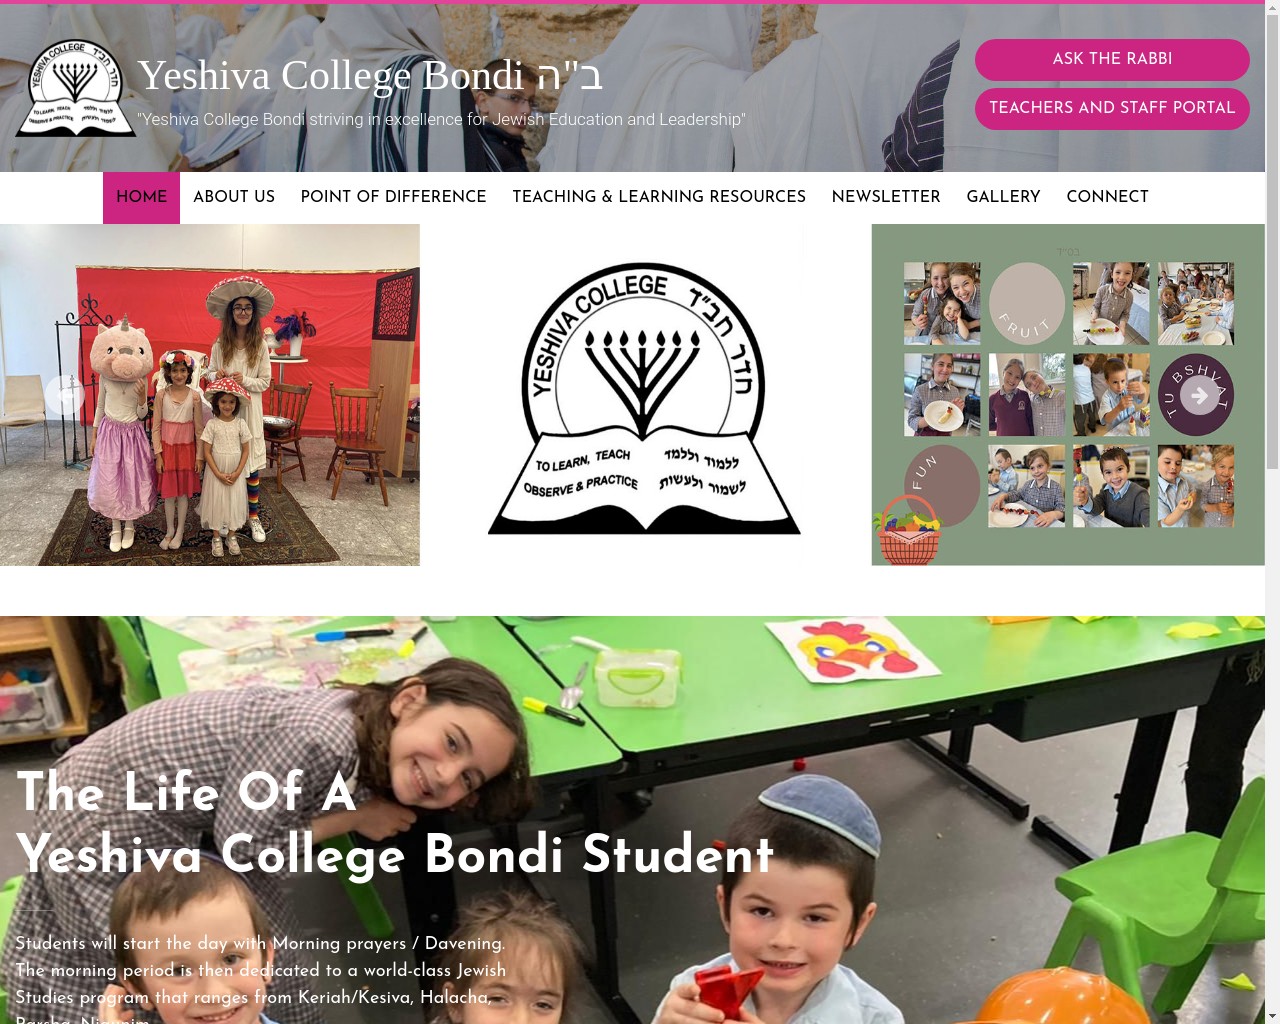 Yeshiva College Bondi